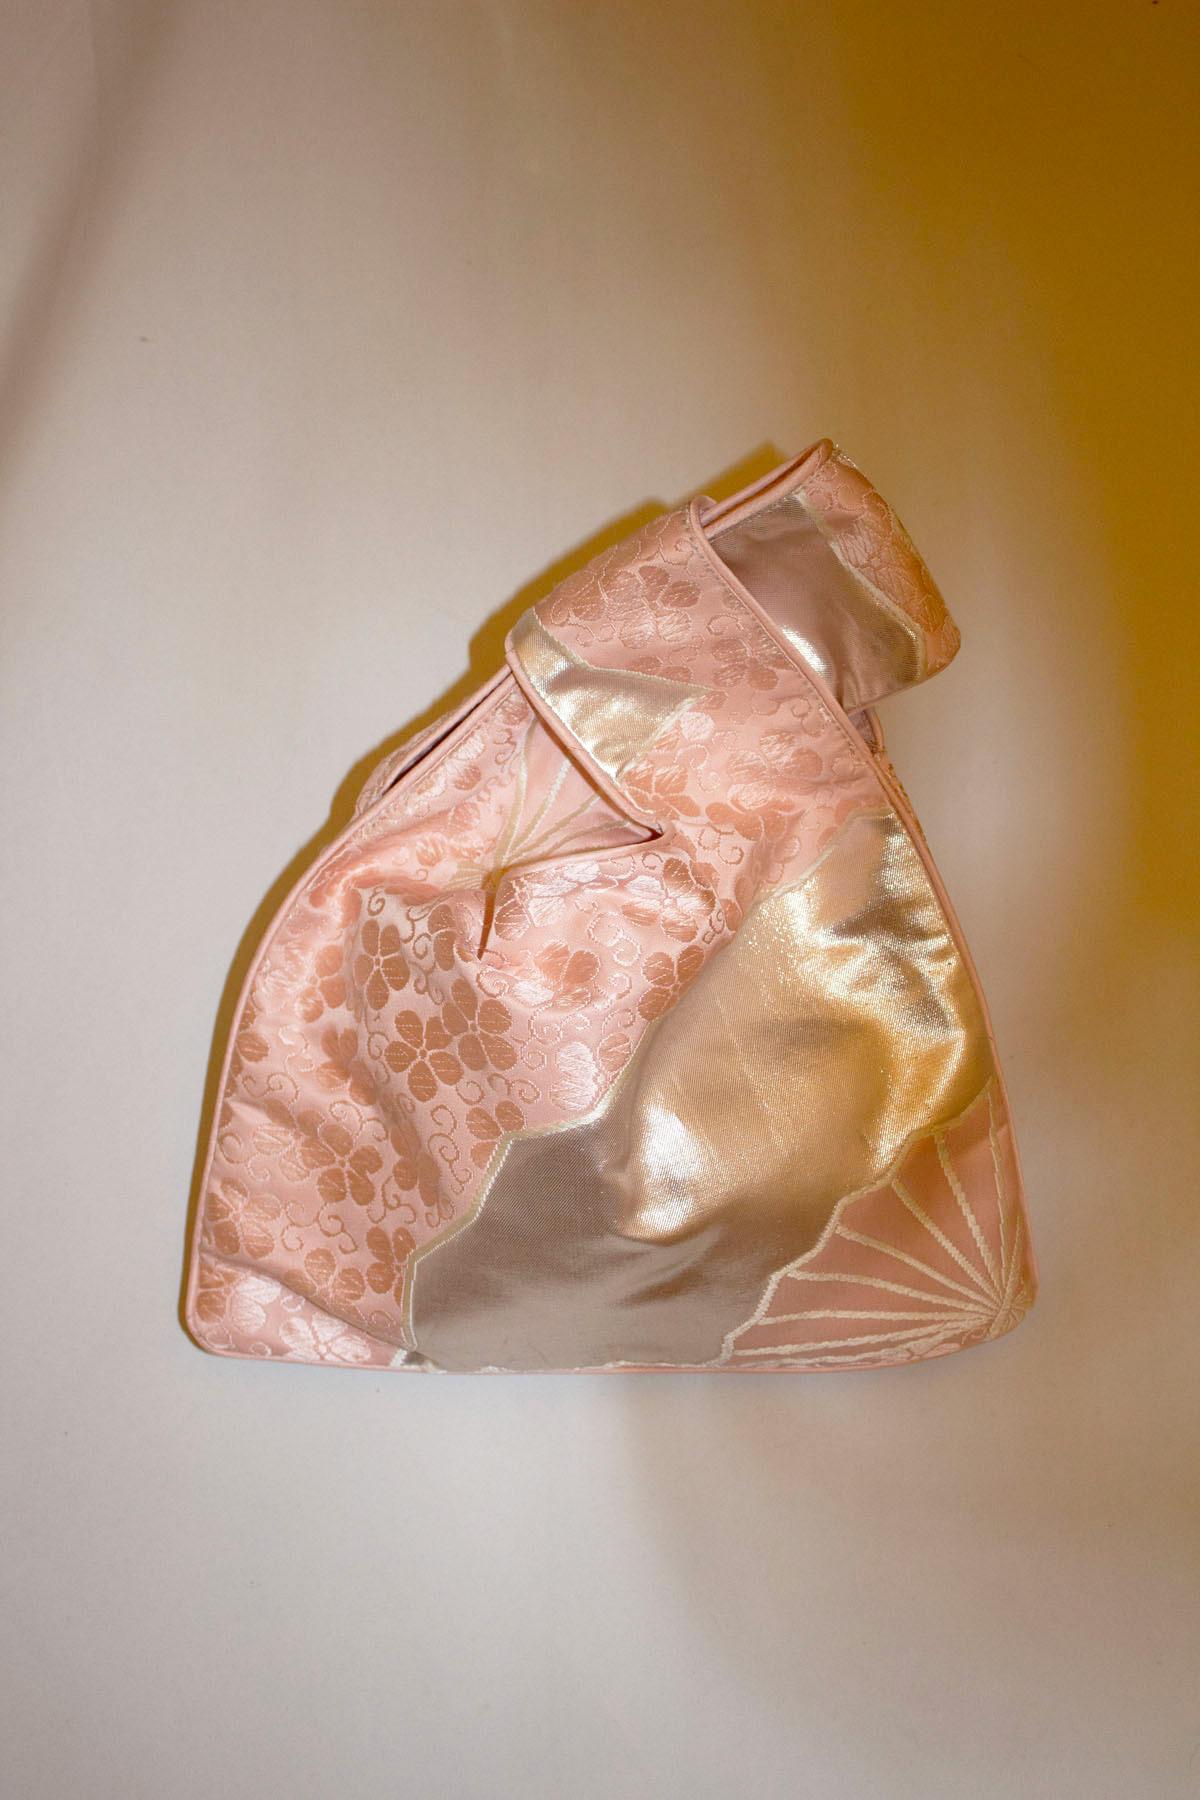 Un joli sac à main vintage, facile à utiliser, fabriqué à partir de ceintures obi anciennes et rares. Le sac présente un motif rose, argenté et floral et les poignées se glissent simplement l'une dans l'autre. Le sac est entièrement doublé.
Mesures.